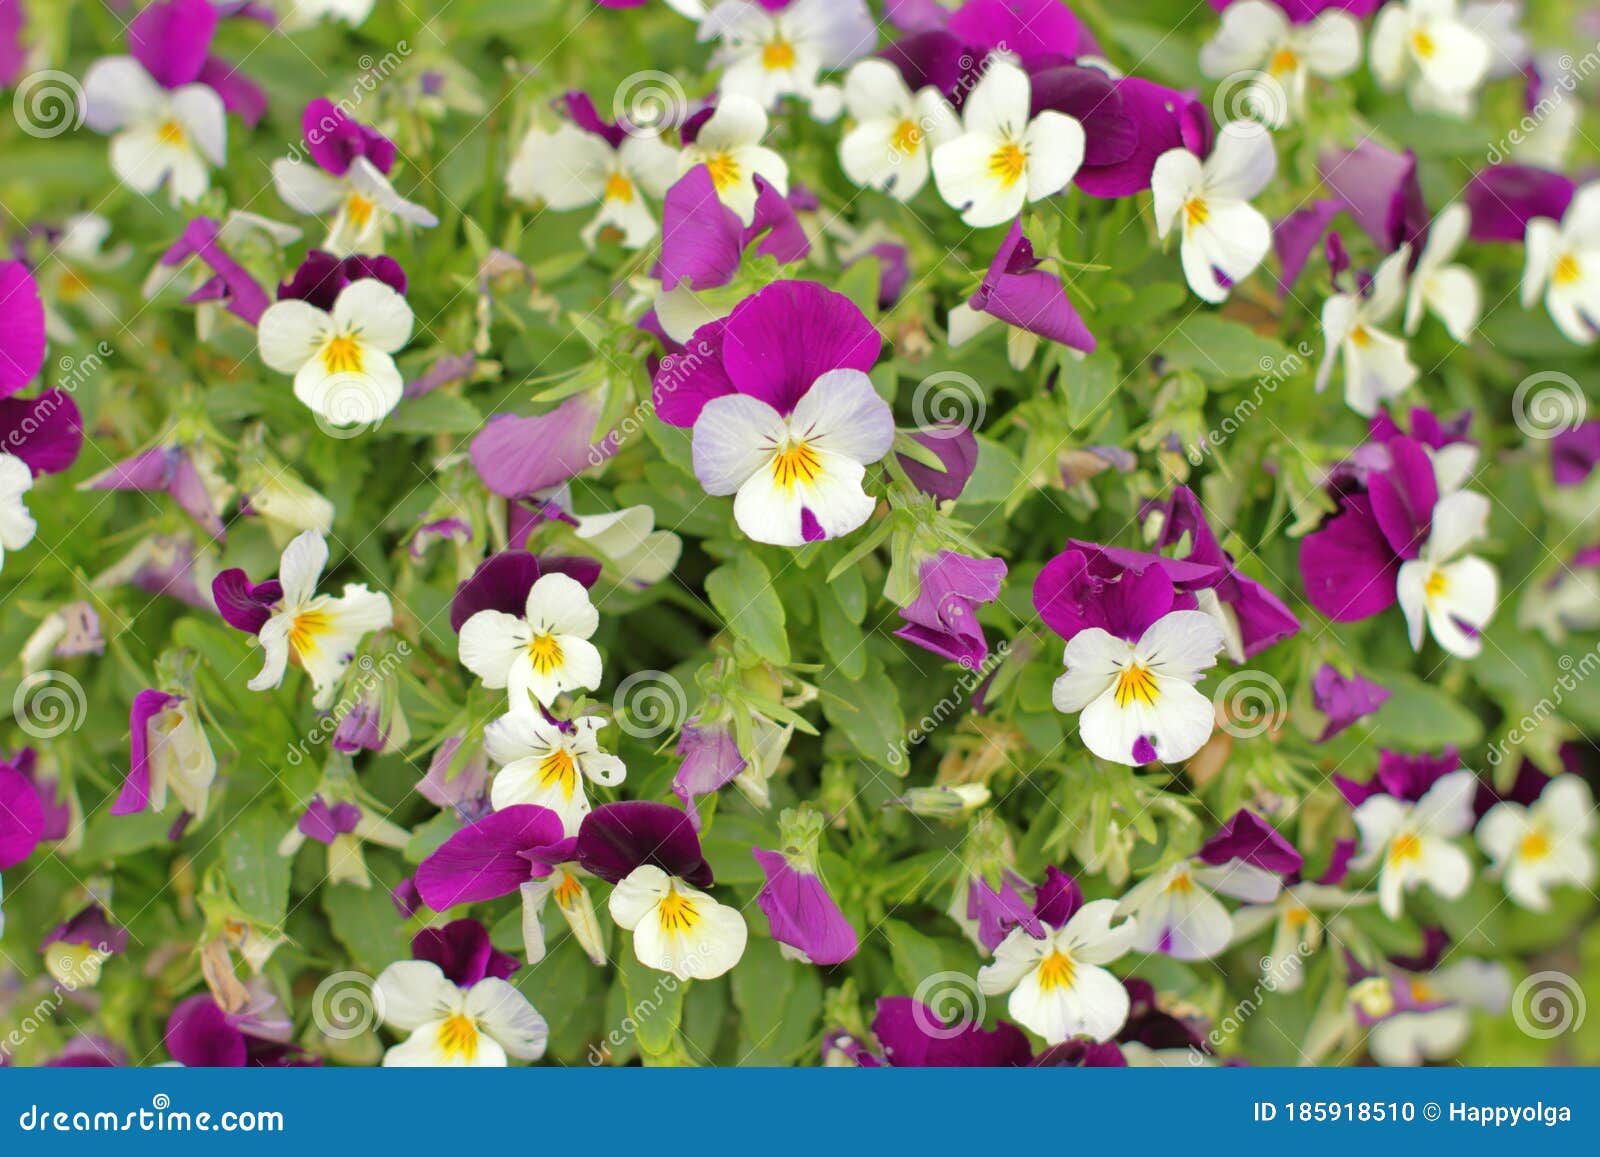 Voorzichtig zadel Geduld Kleine bloemen bos viola stock foto. Image of bloemen - 185918510